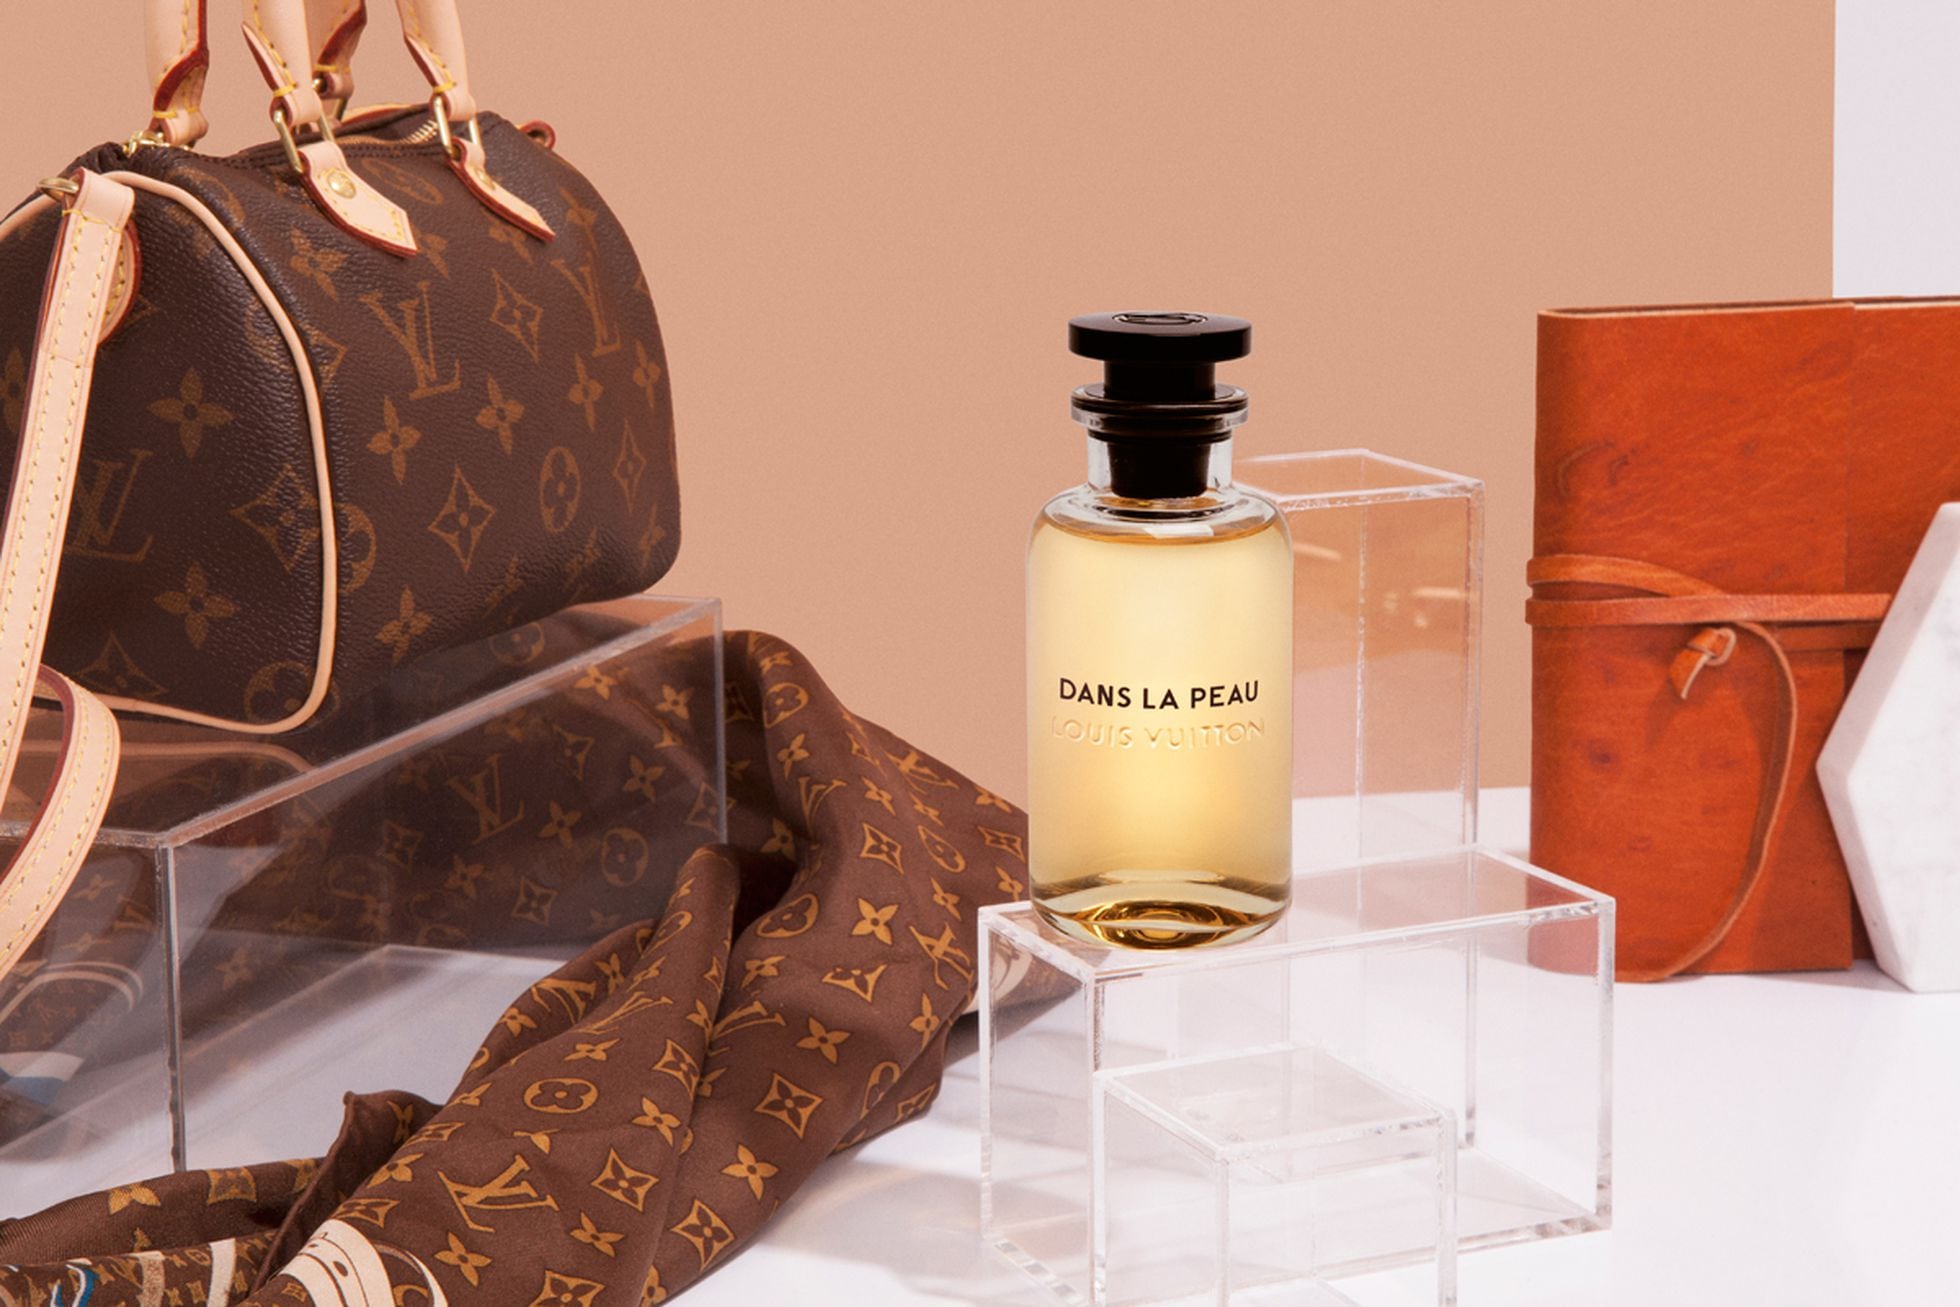 Siete perfumes de Louis Vuitton para siete tendencias de moda